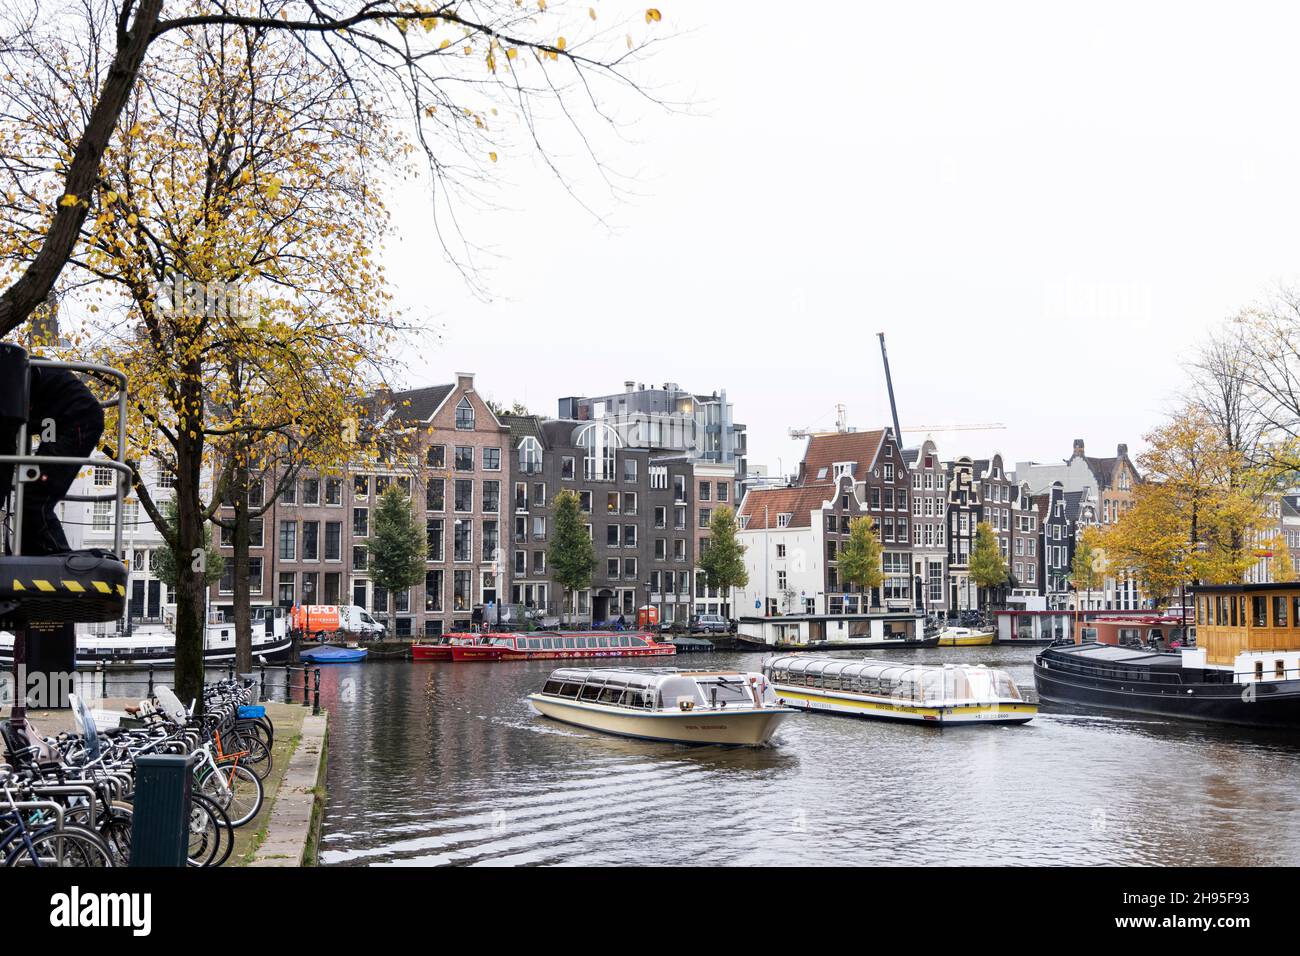 Edifici storici tradizionali e tour in barca sull'Amstel in un giorno autunnale ad Amsterdam, Paesi Bassi. Foto Stock